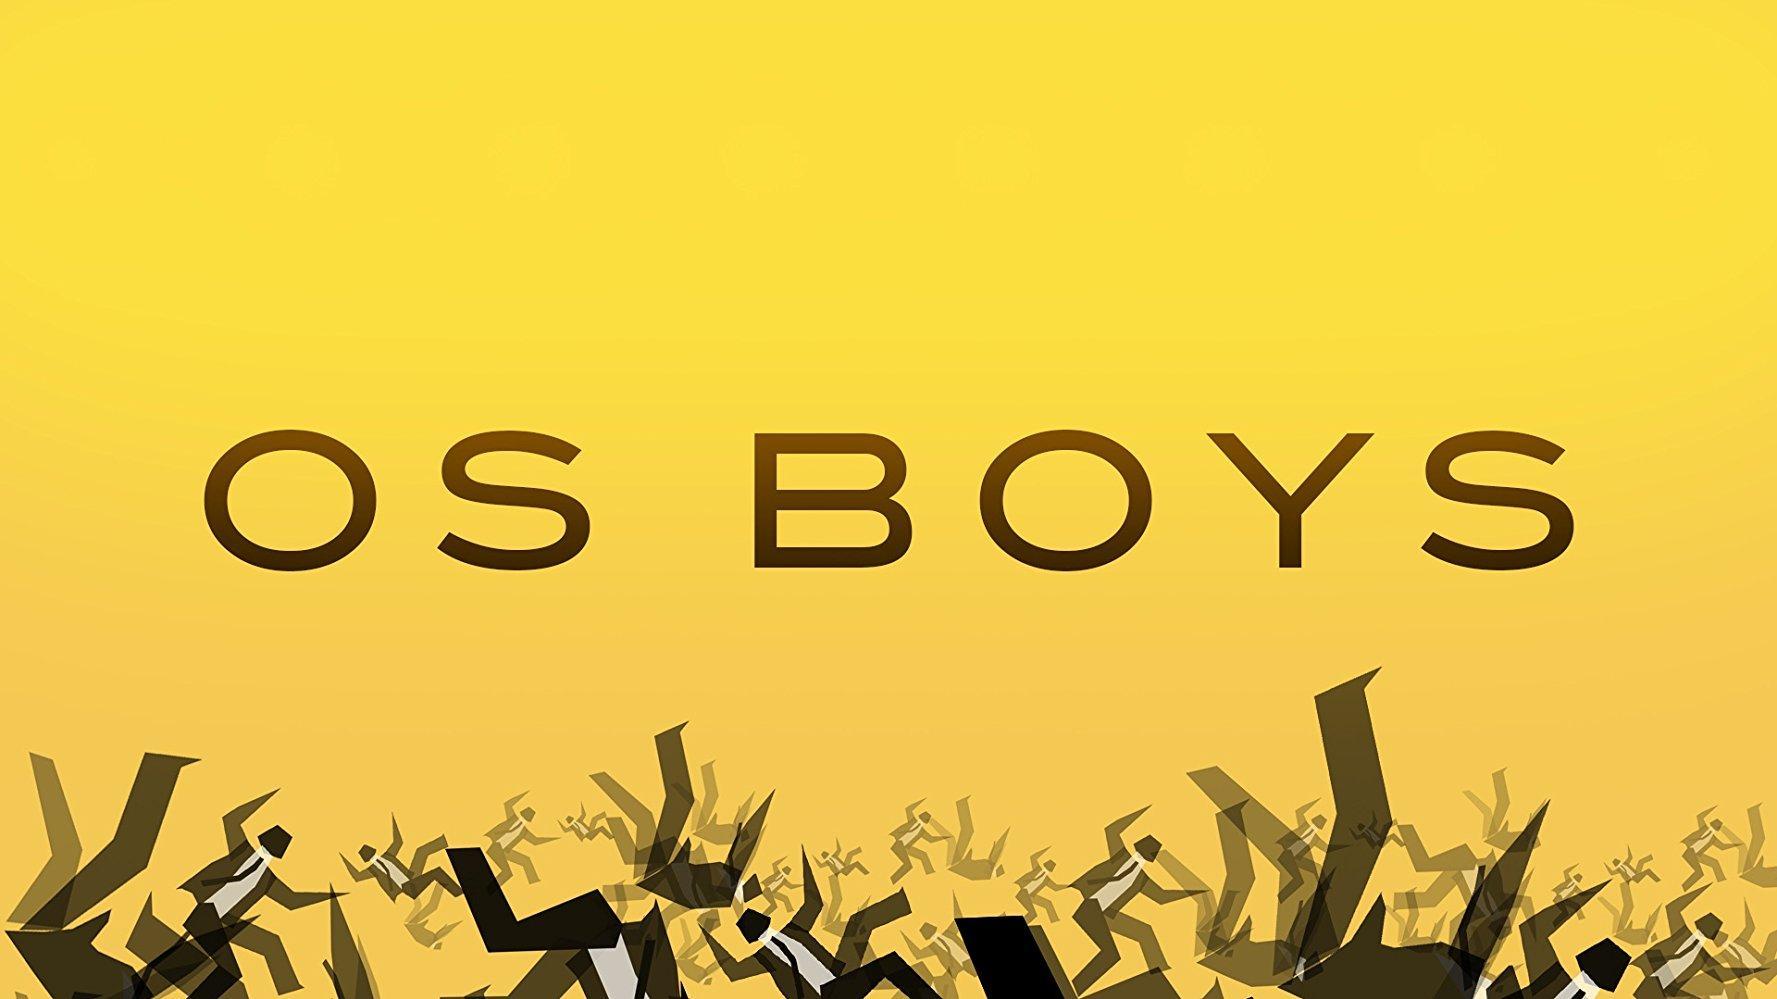 Os Boys (Serie de TV)